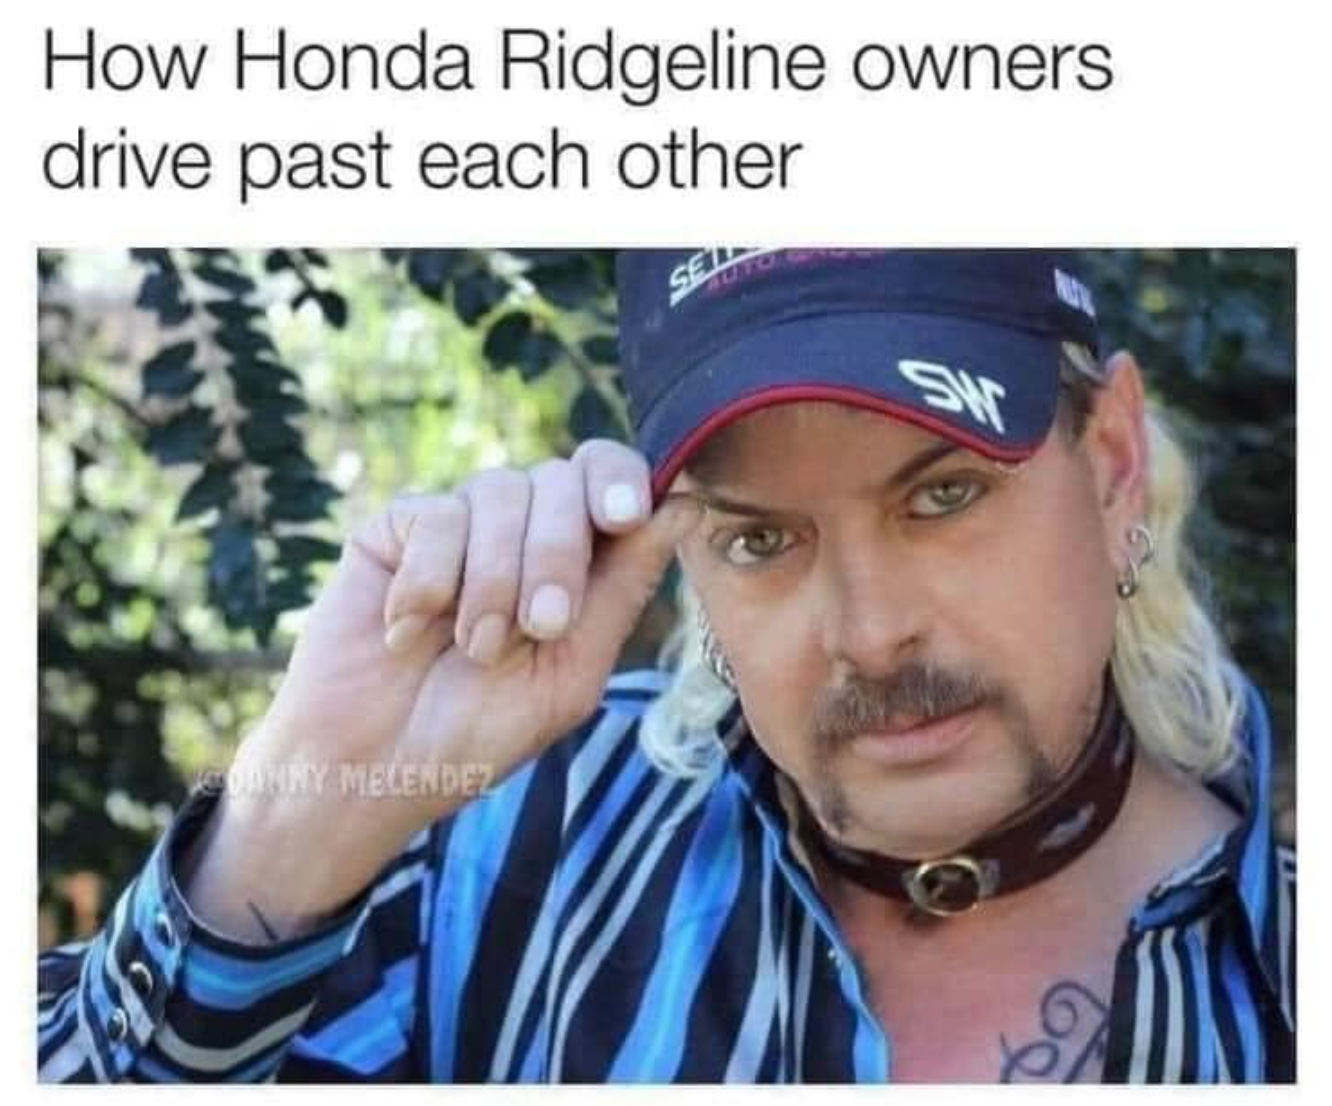 honda ridgeline owners meme - How Honda Ridgeline owners drive past each other Caronny Melendez